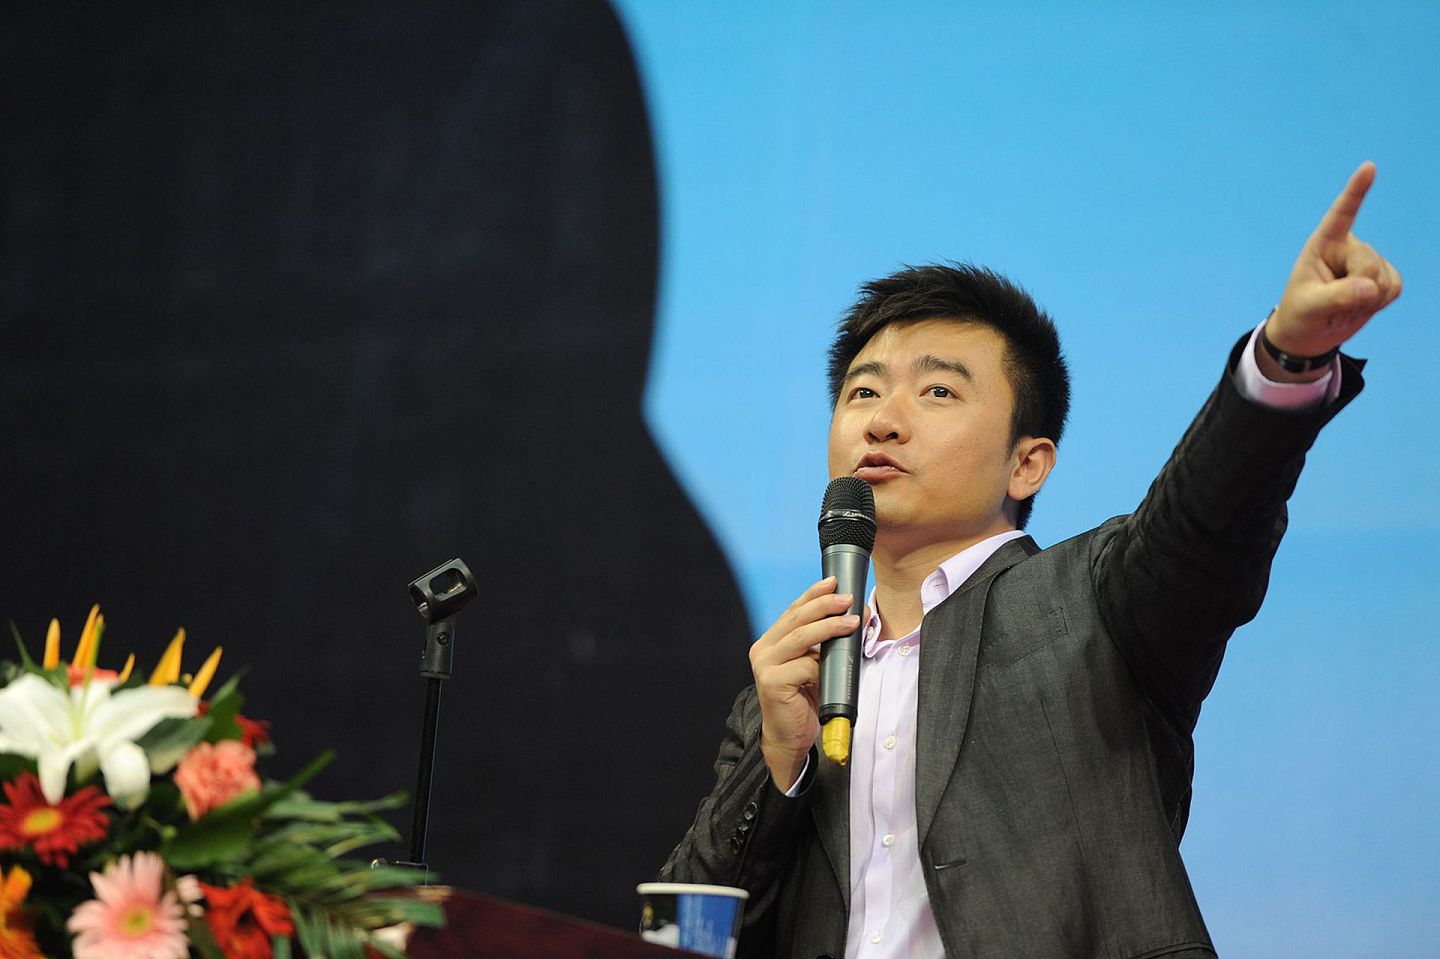 2012年5月26日，中国央视主播芮成钢携新书《虚实之间》到合肥，在安徽图书城与读者进行面对面交流13年的传媒人生涯。（视觉中国）